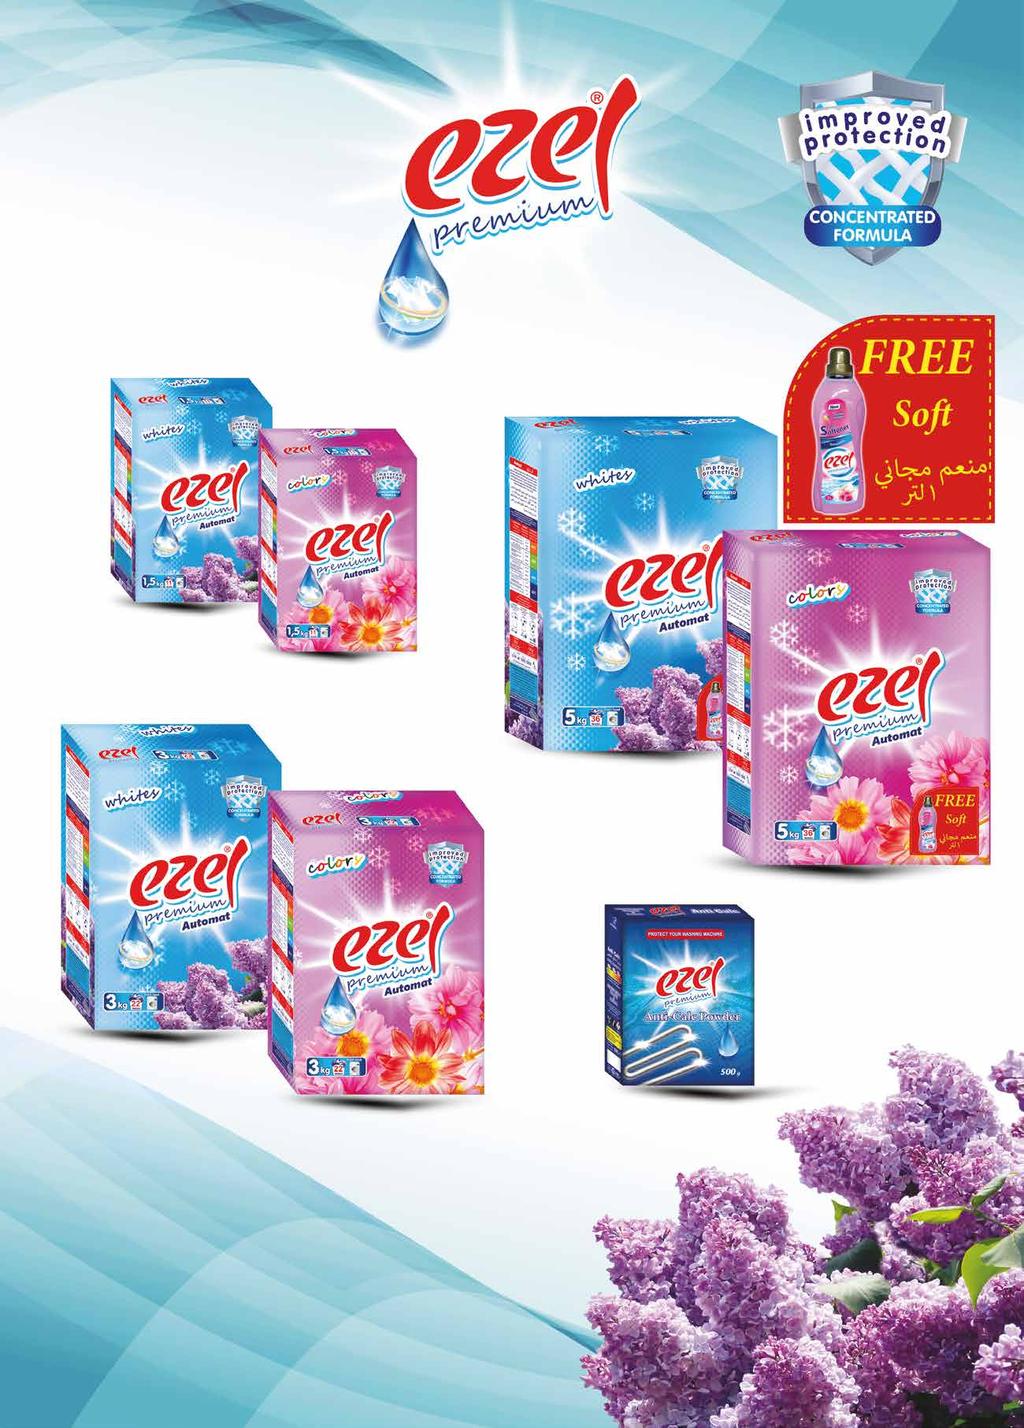 Ezel Automat Powder Detergent Color 1,5 kg - Box 86 8 12,00 13,00 Ezel Automat Powder Detergent White 1,5 kg - Box 86 8 12,00 13,00 Ezel Automat Powder Detergent Color 3 kg - Box 86 6 18,00 19,00